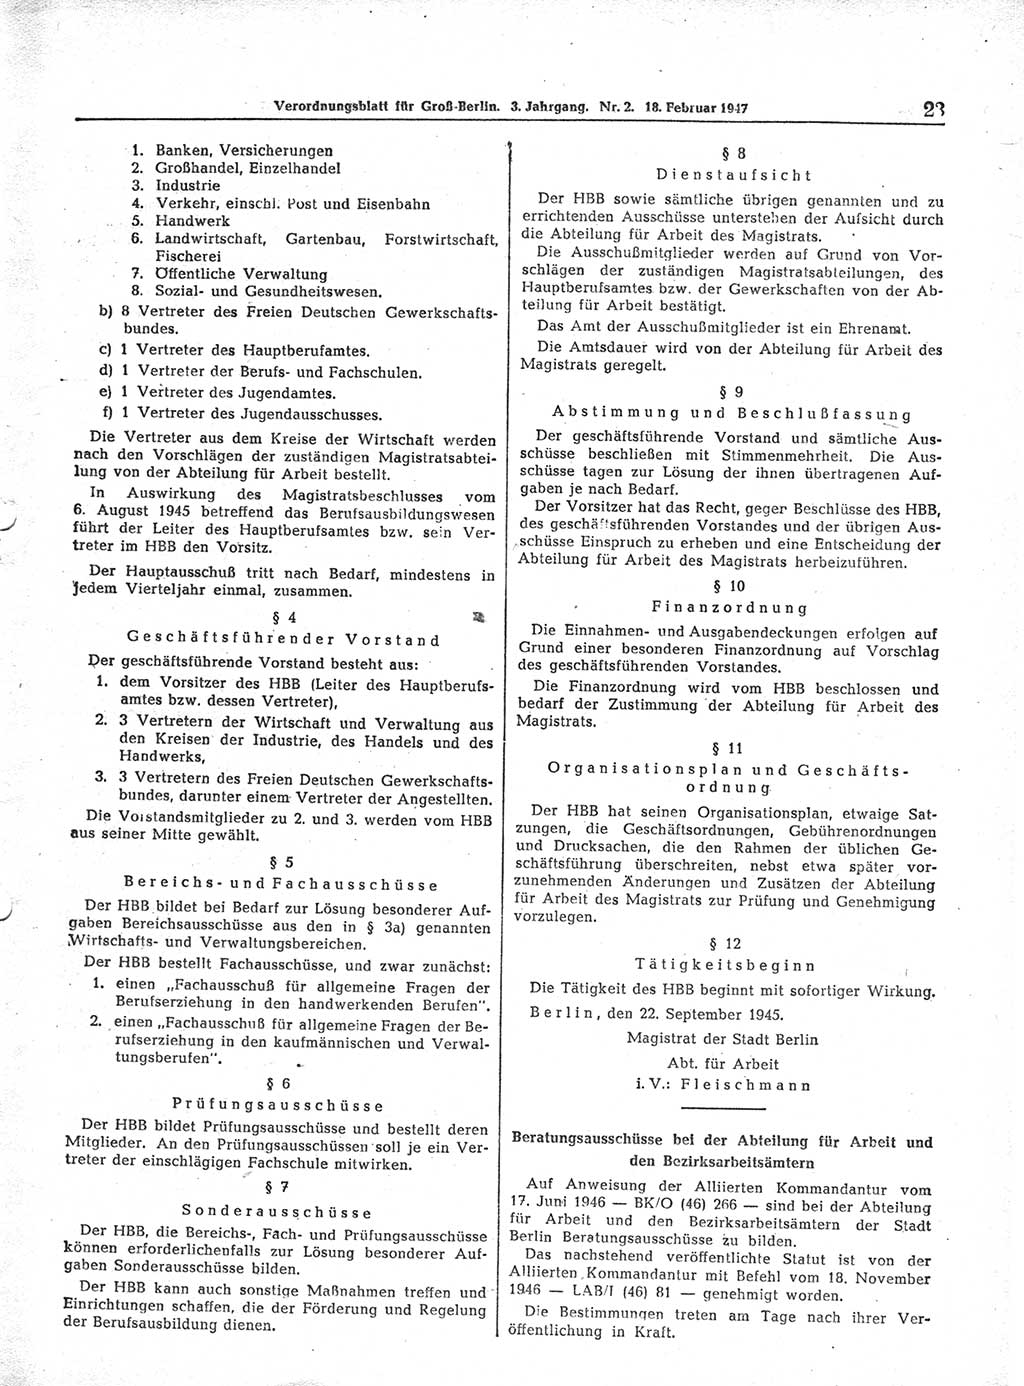 Verordnungsblatt (VOBl.) für Groß-Berlin 1947, Seite 23 (VOBl. Bln. 1947, S. 23)